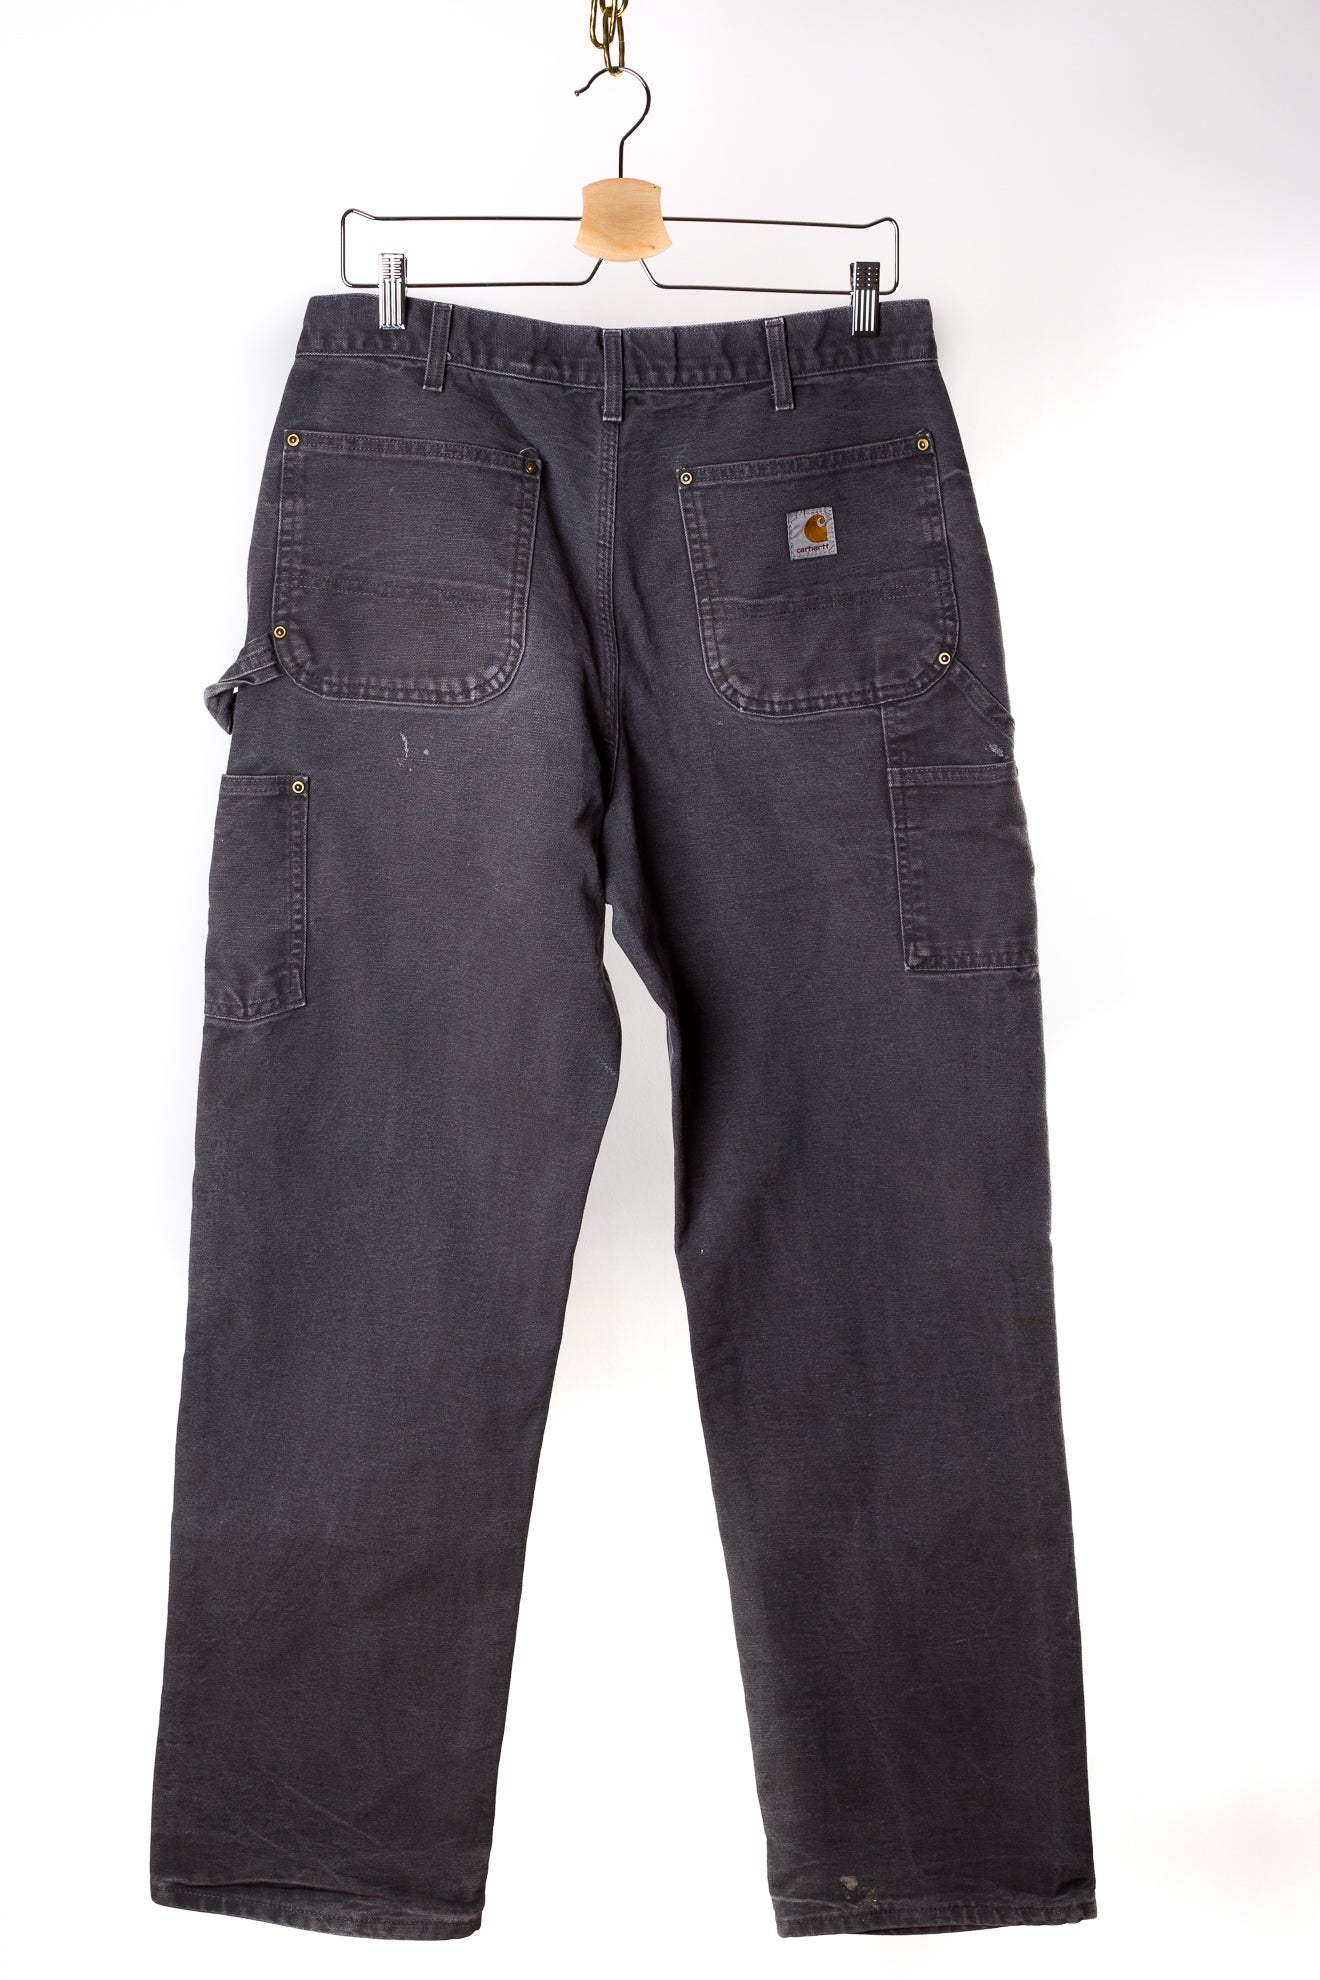 grijze-carhartt-jeans-tweedehands